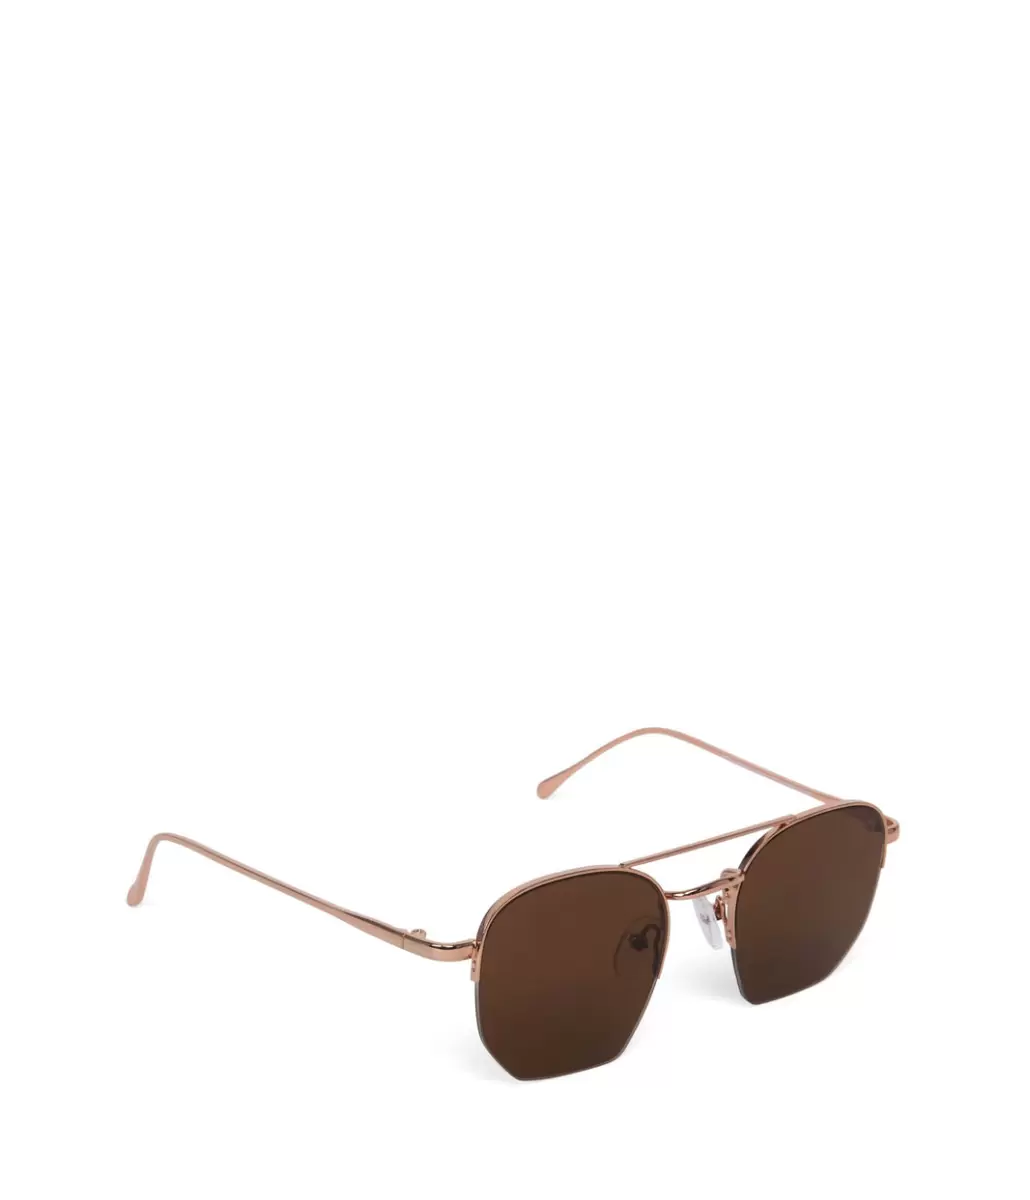 Rgobro Exclusive Offer Sunglasses Women Sarai Aviator Sunglasses Matt & Nat - 2